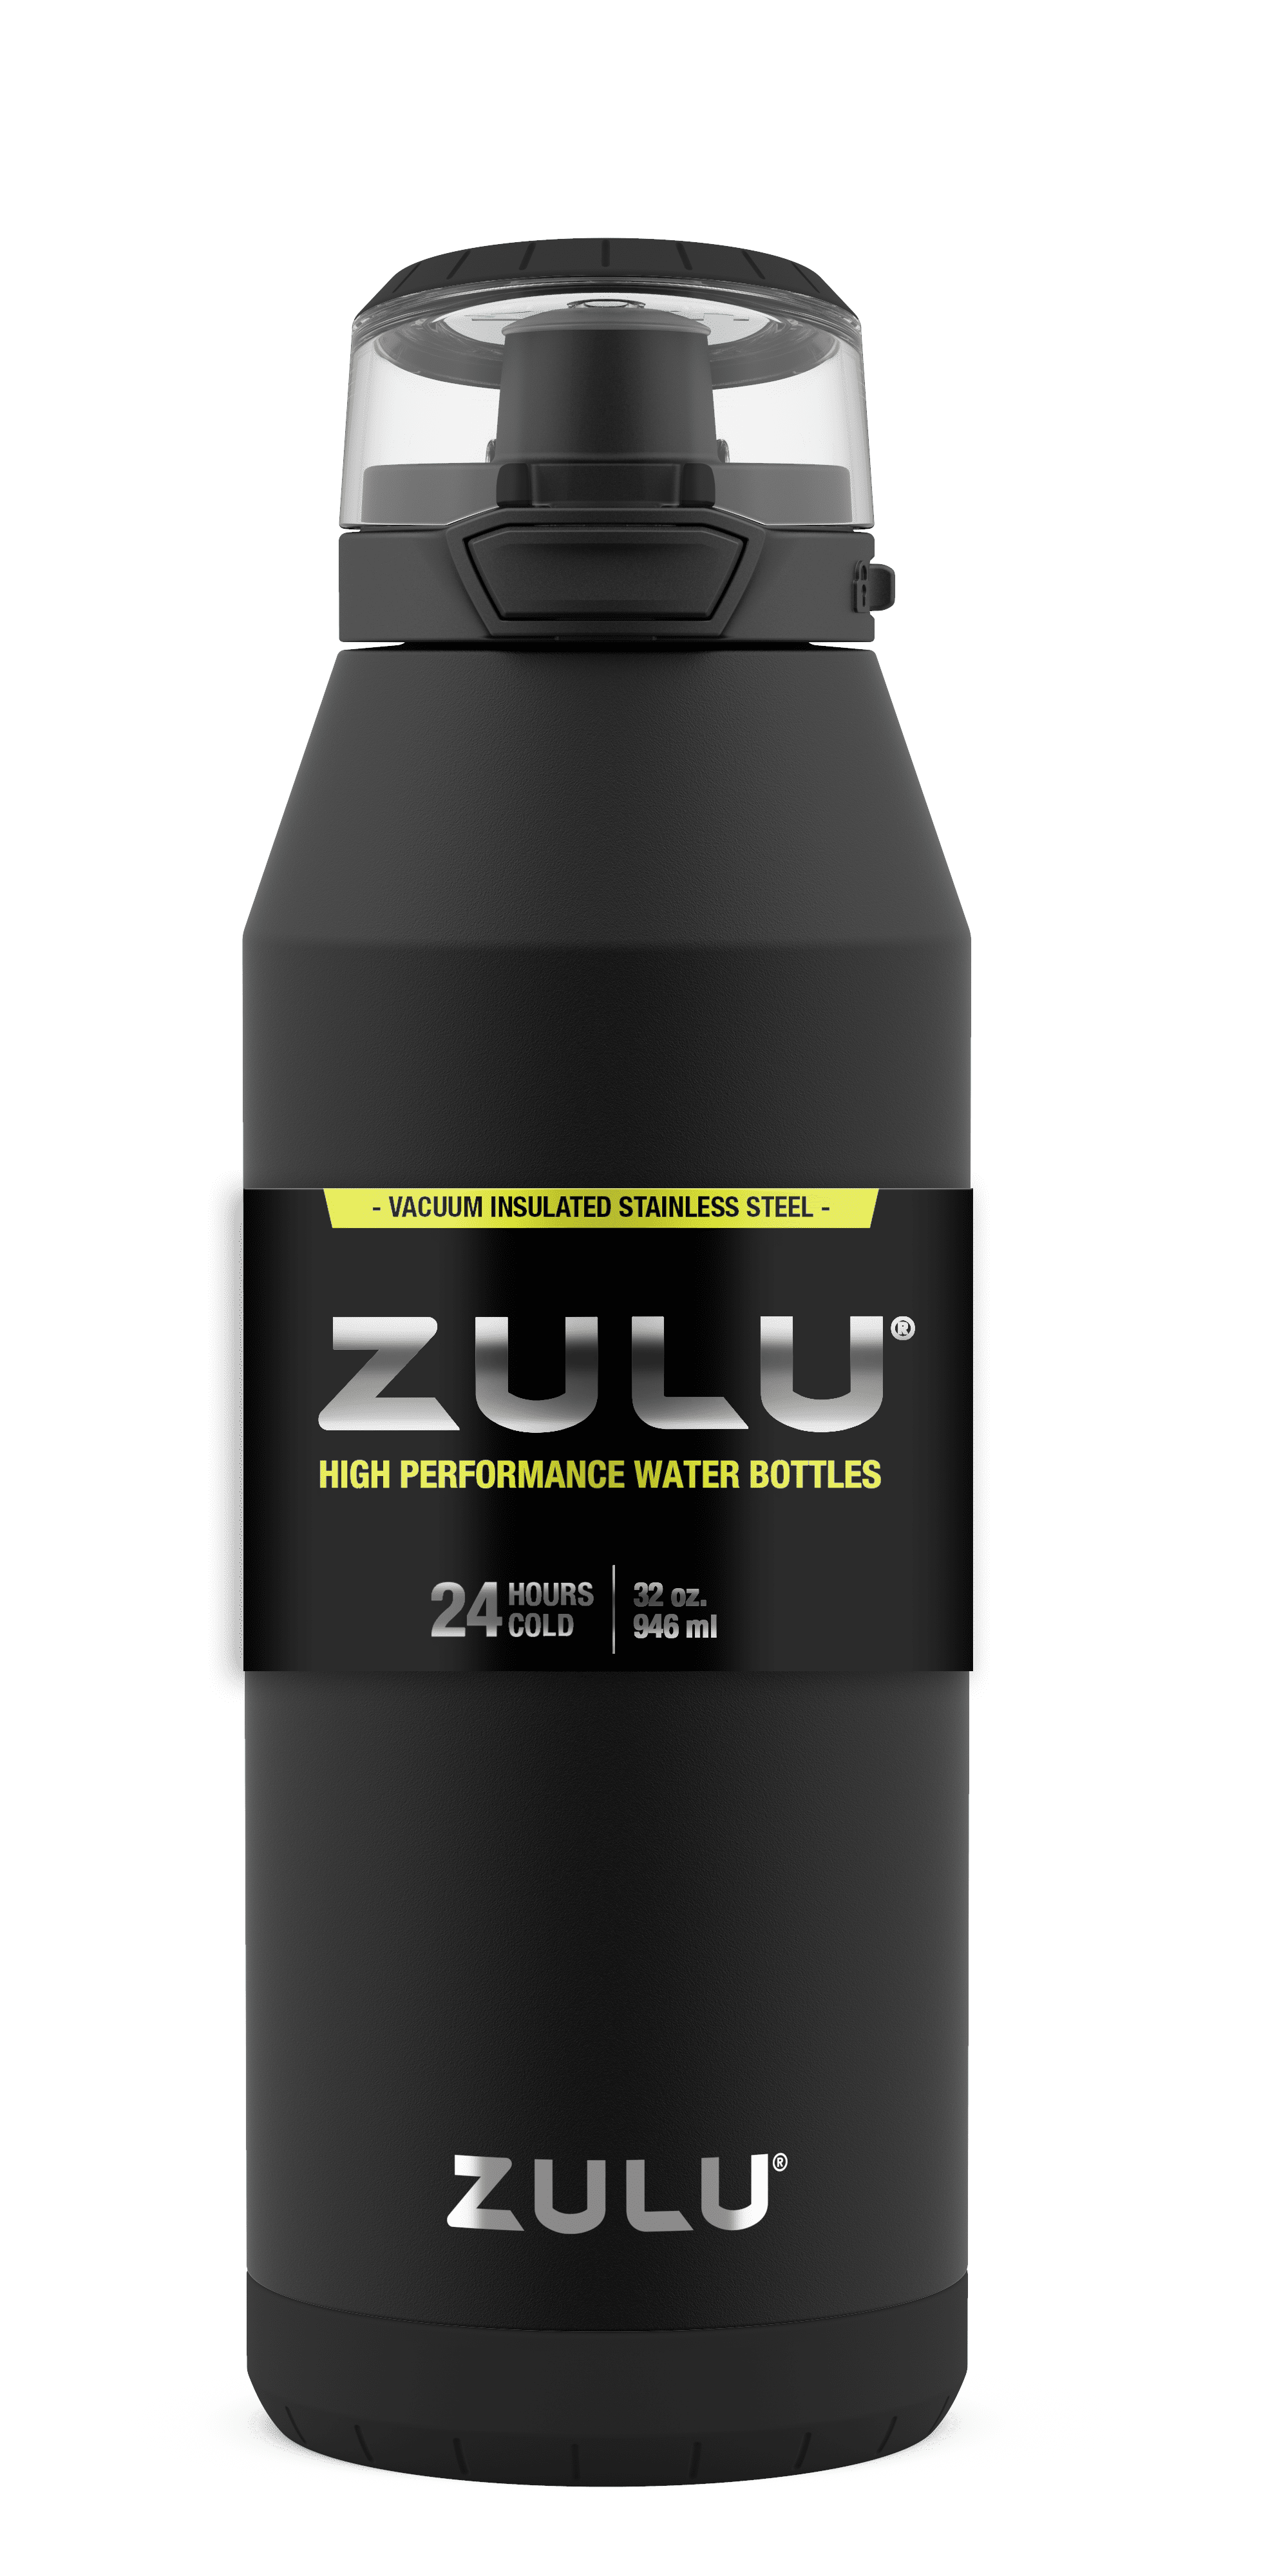 Zulu Swift 32oz Stainless Steel Water Bottle - Black